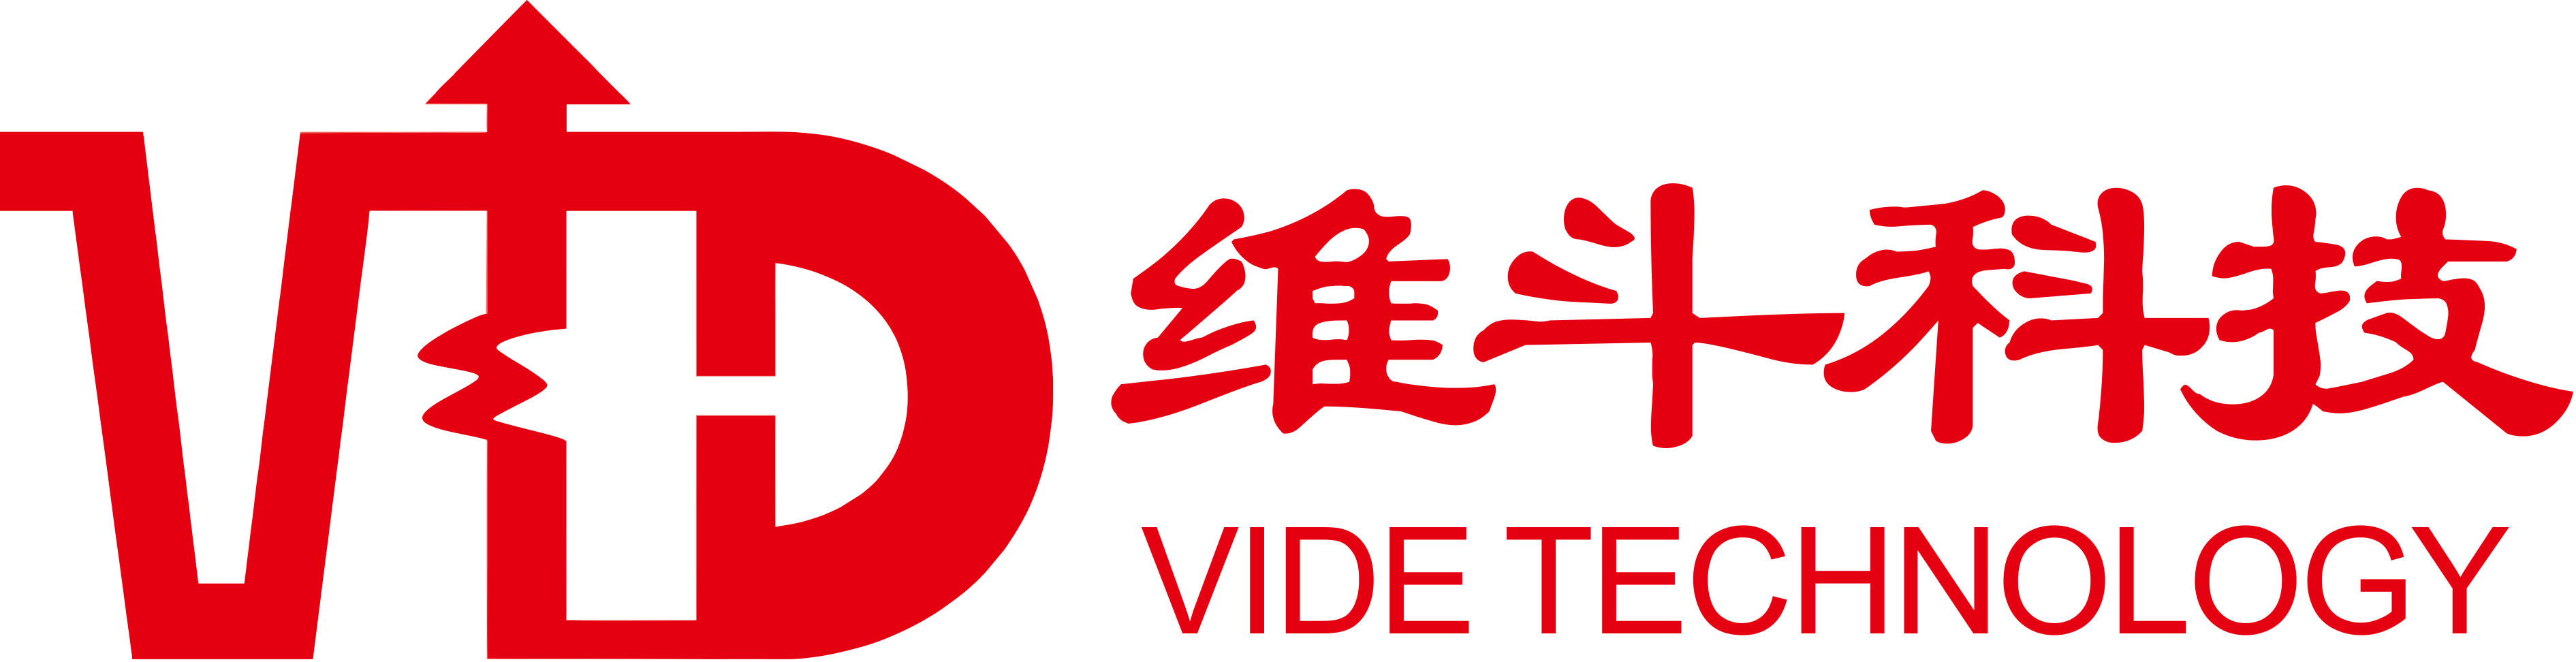 Dongguan Vide Technology Co., Ltd